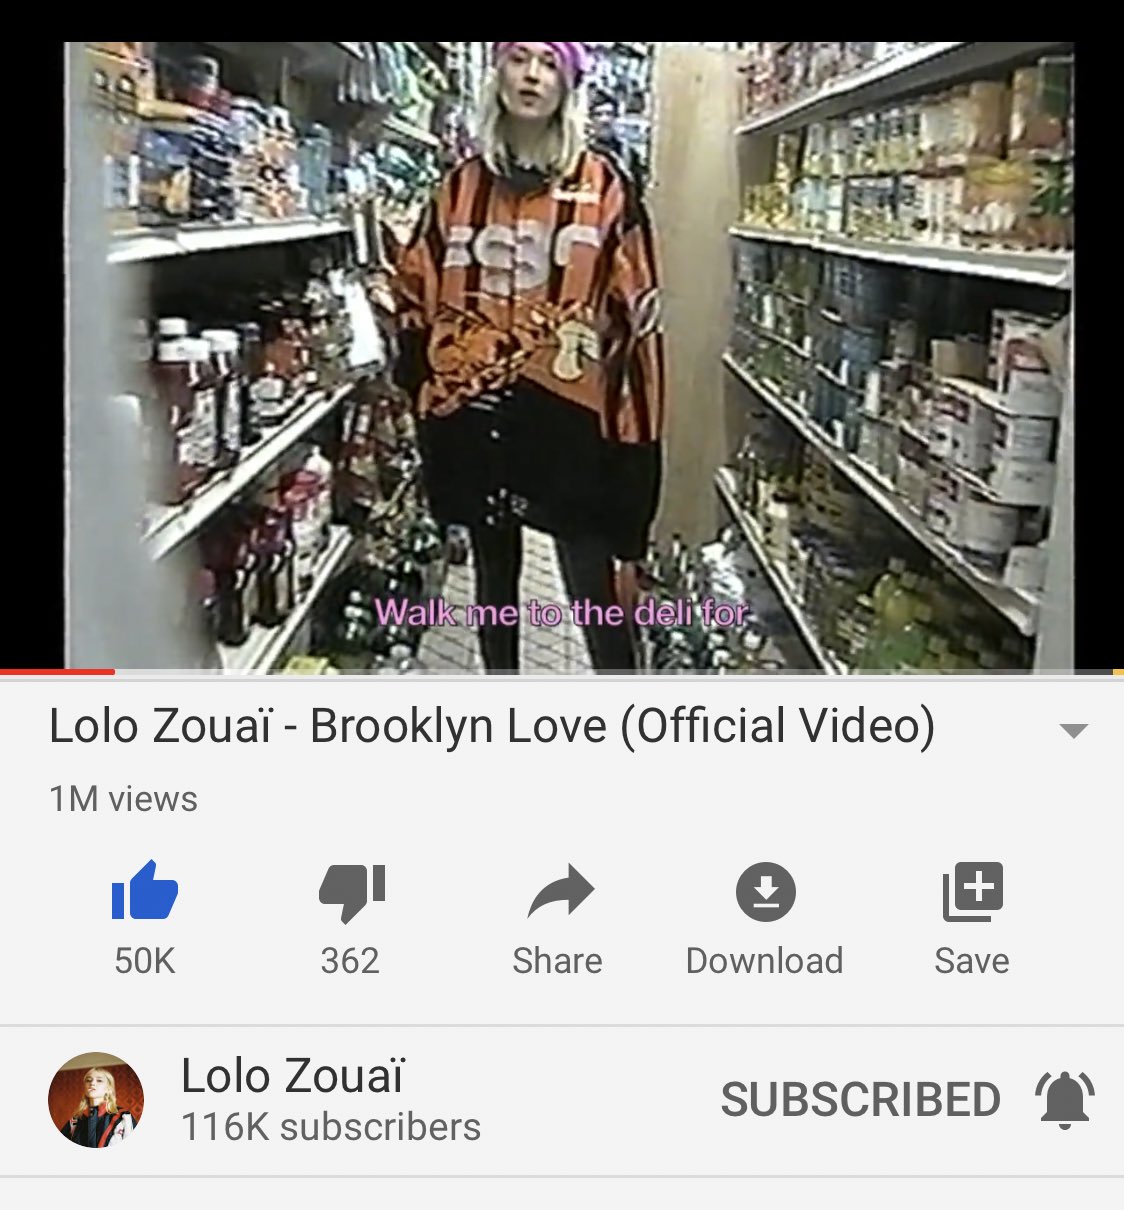 Lolo Zouai Brooklyn Love Just Hit A Milly On Youtube Woo T Co Wvjwwkg1xn Twitter